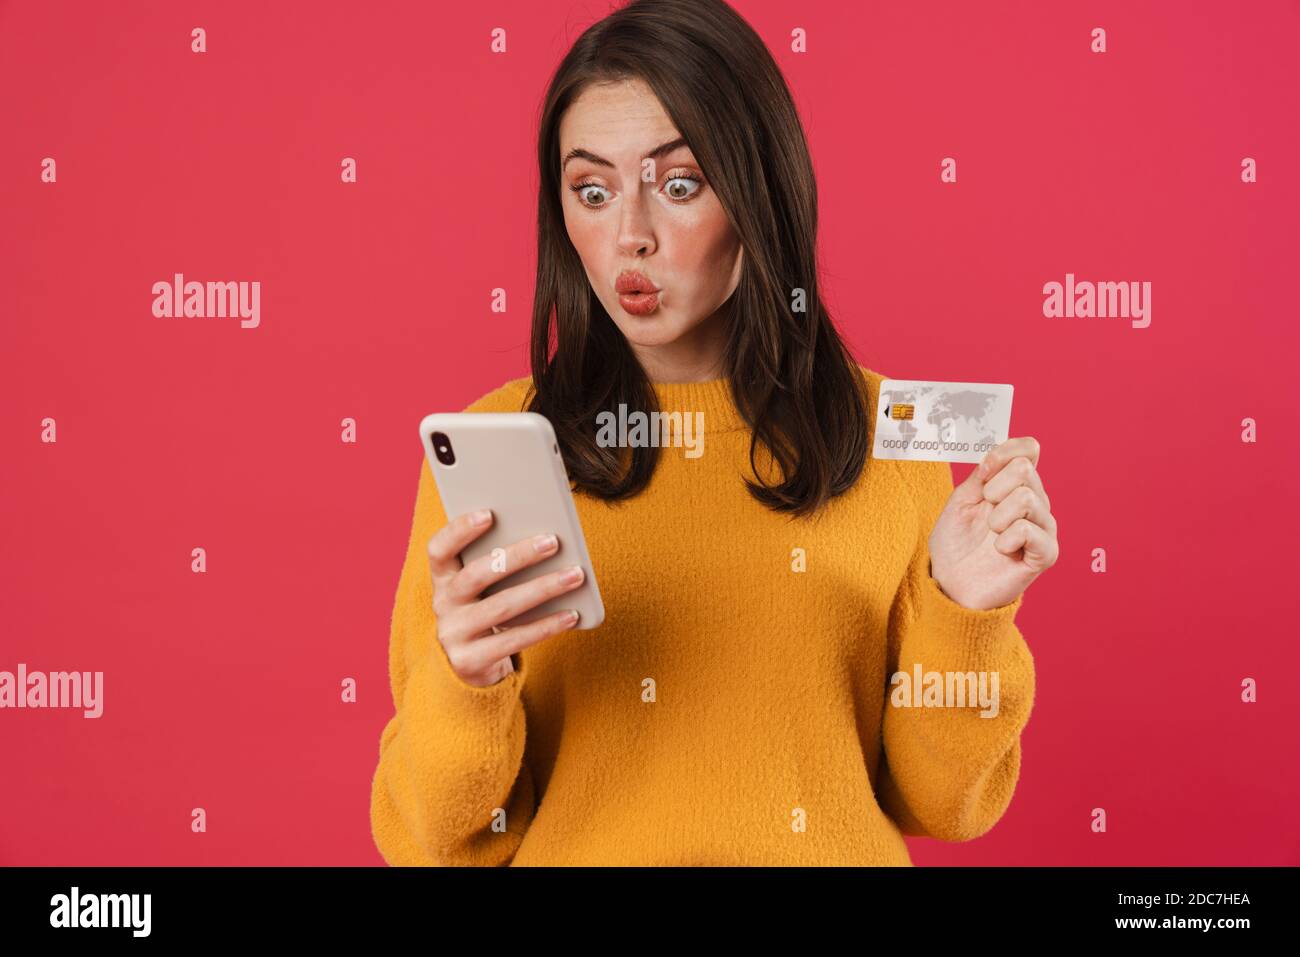 Image d'une jeune fille caucasienne choquée posant avec un téléphone portable et un crédit carte isolée sur fond rose Banque D'Images